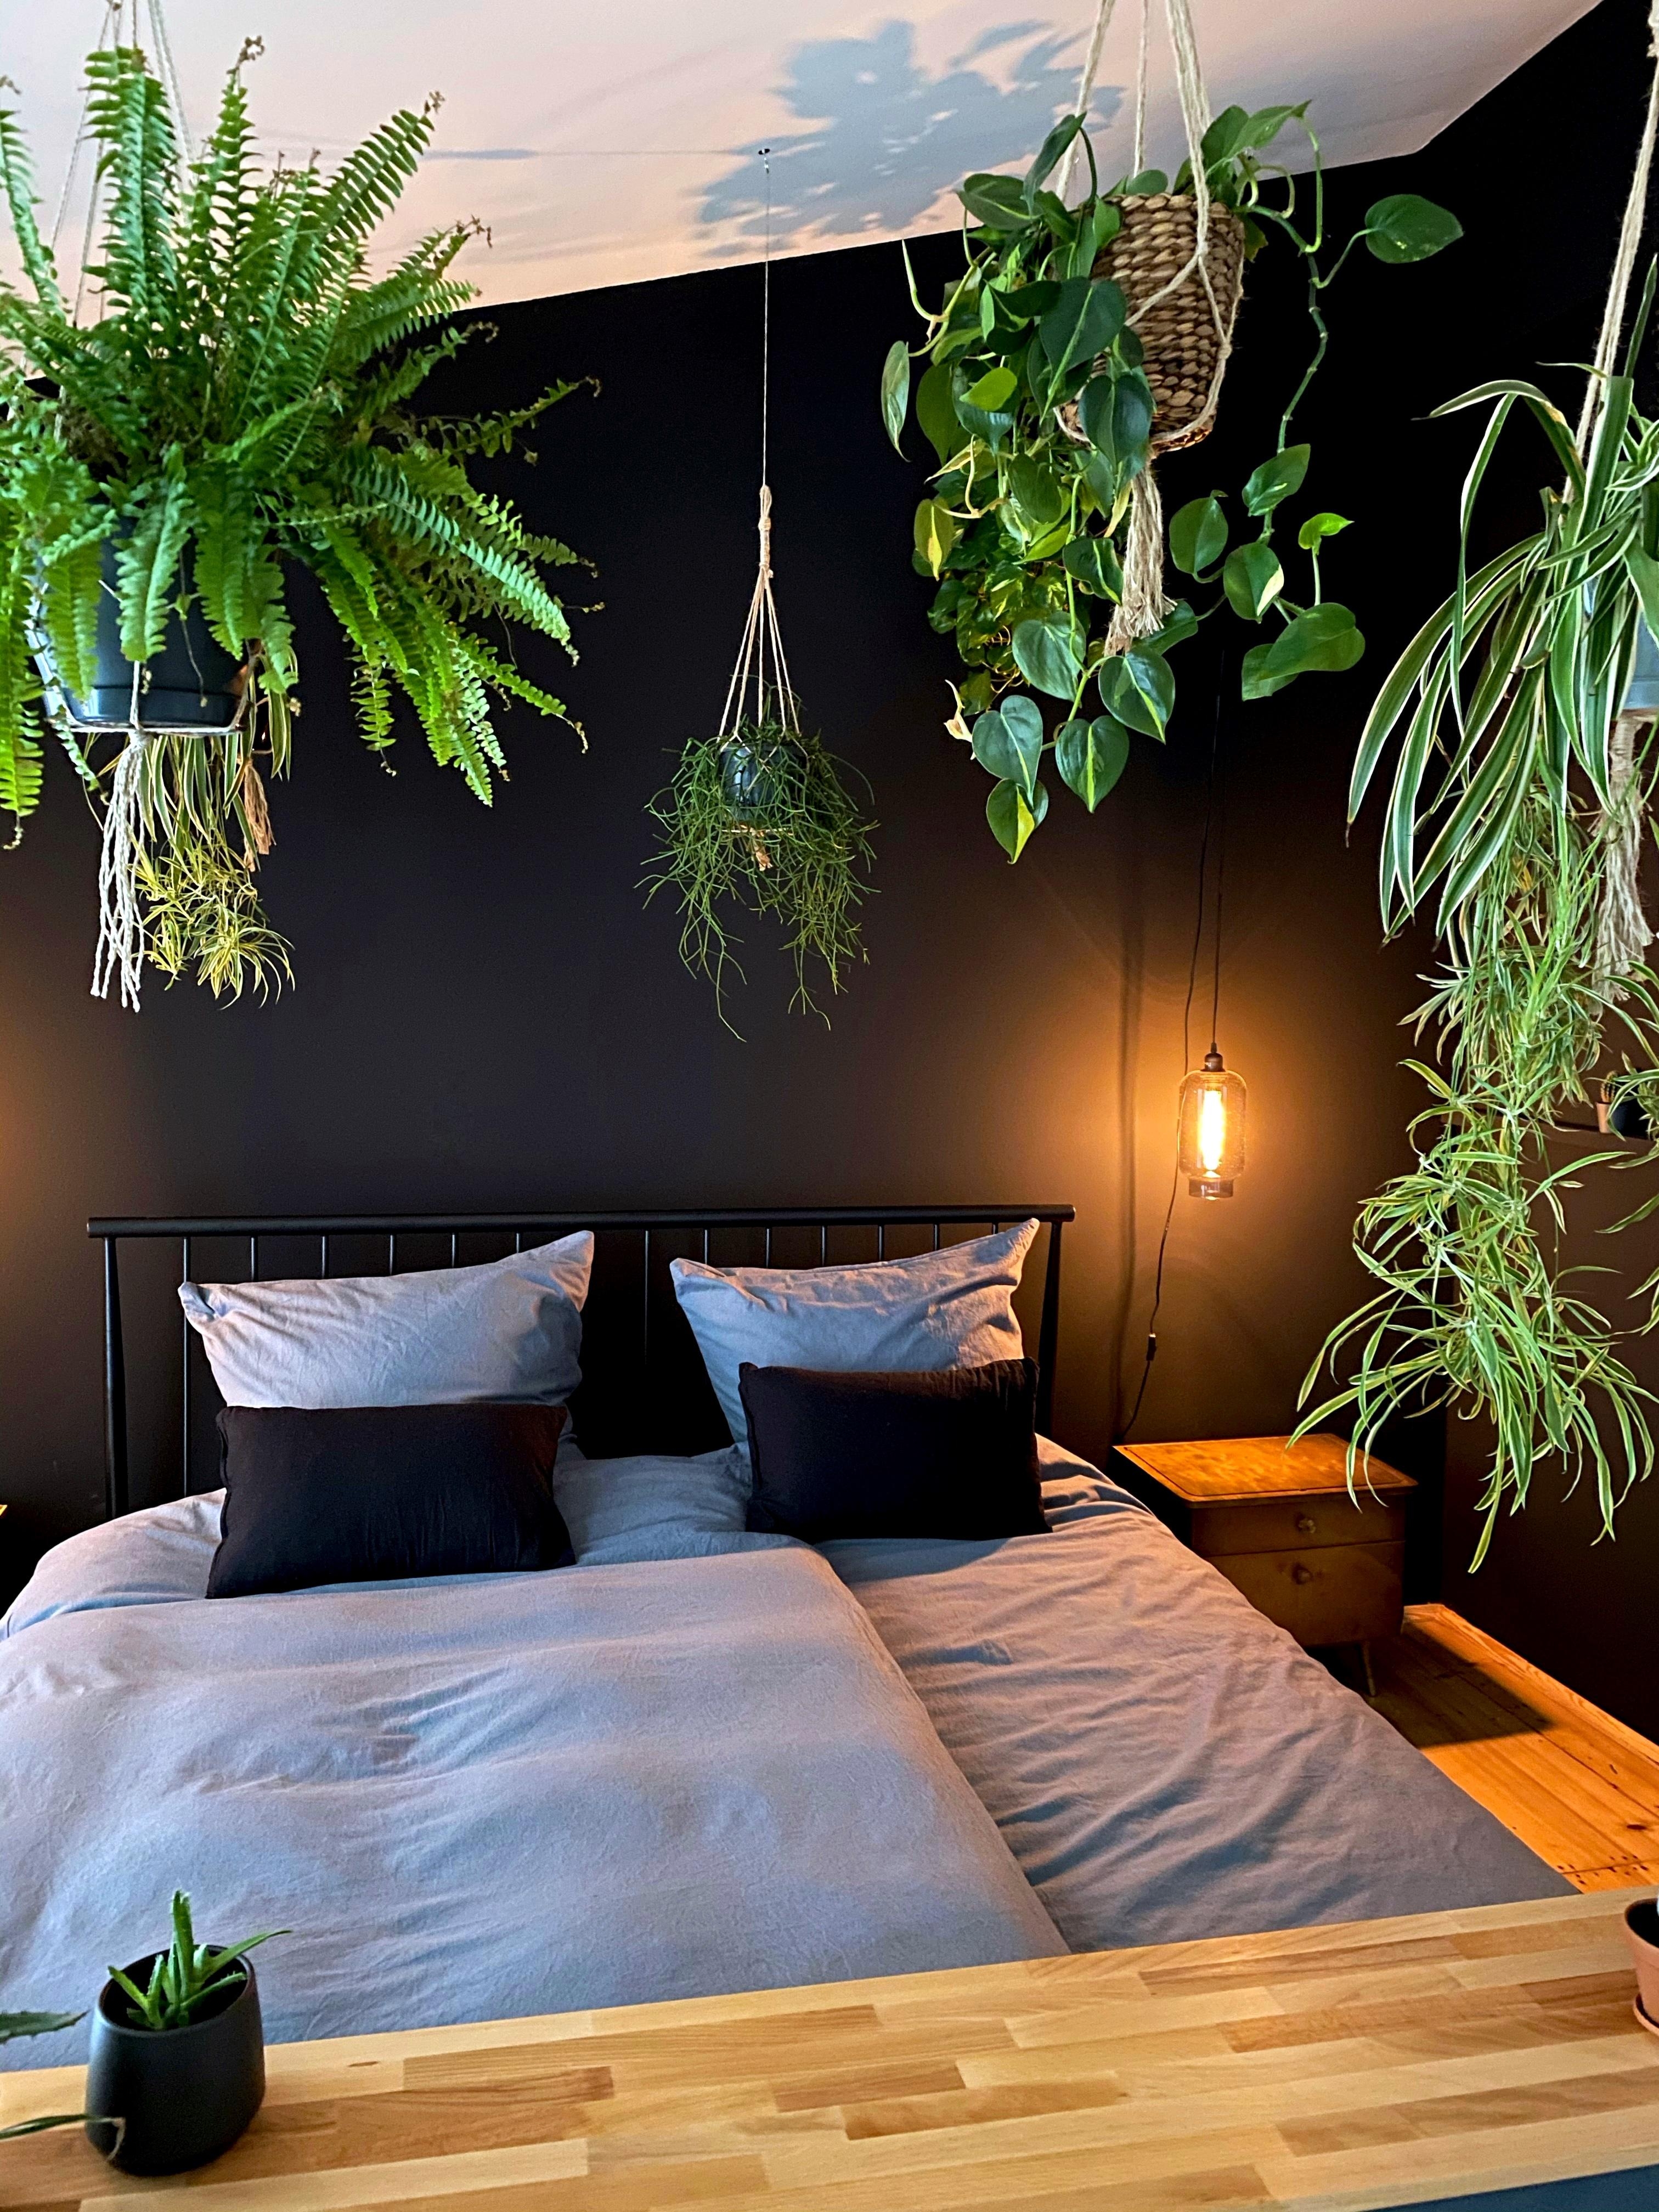 #bedroom #schlafzimmer #urbanjungle #plants #schwarz #schwarzewand